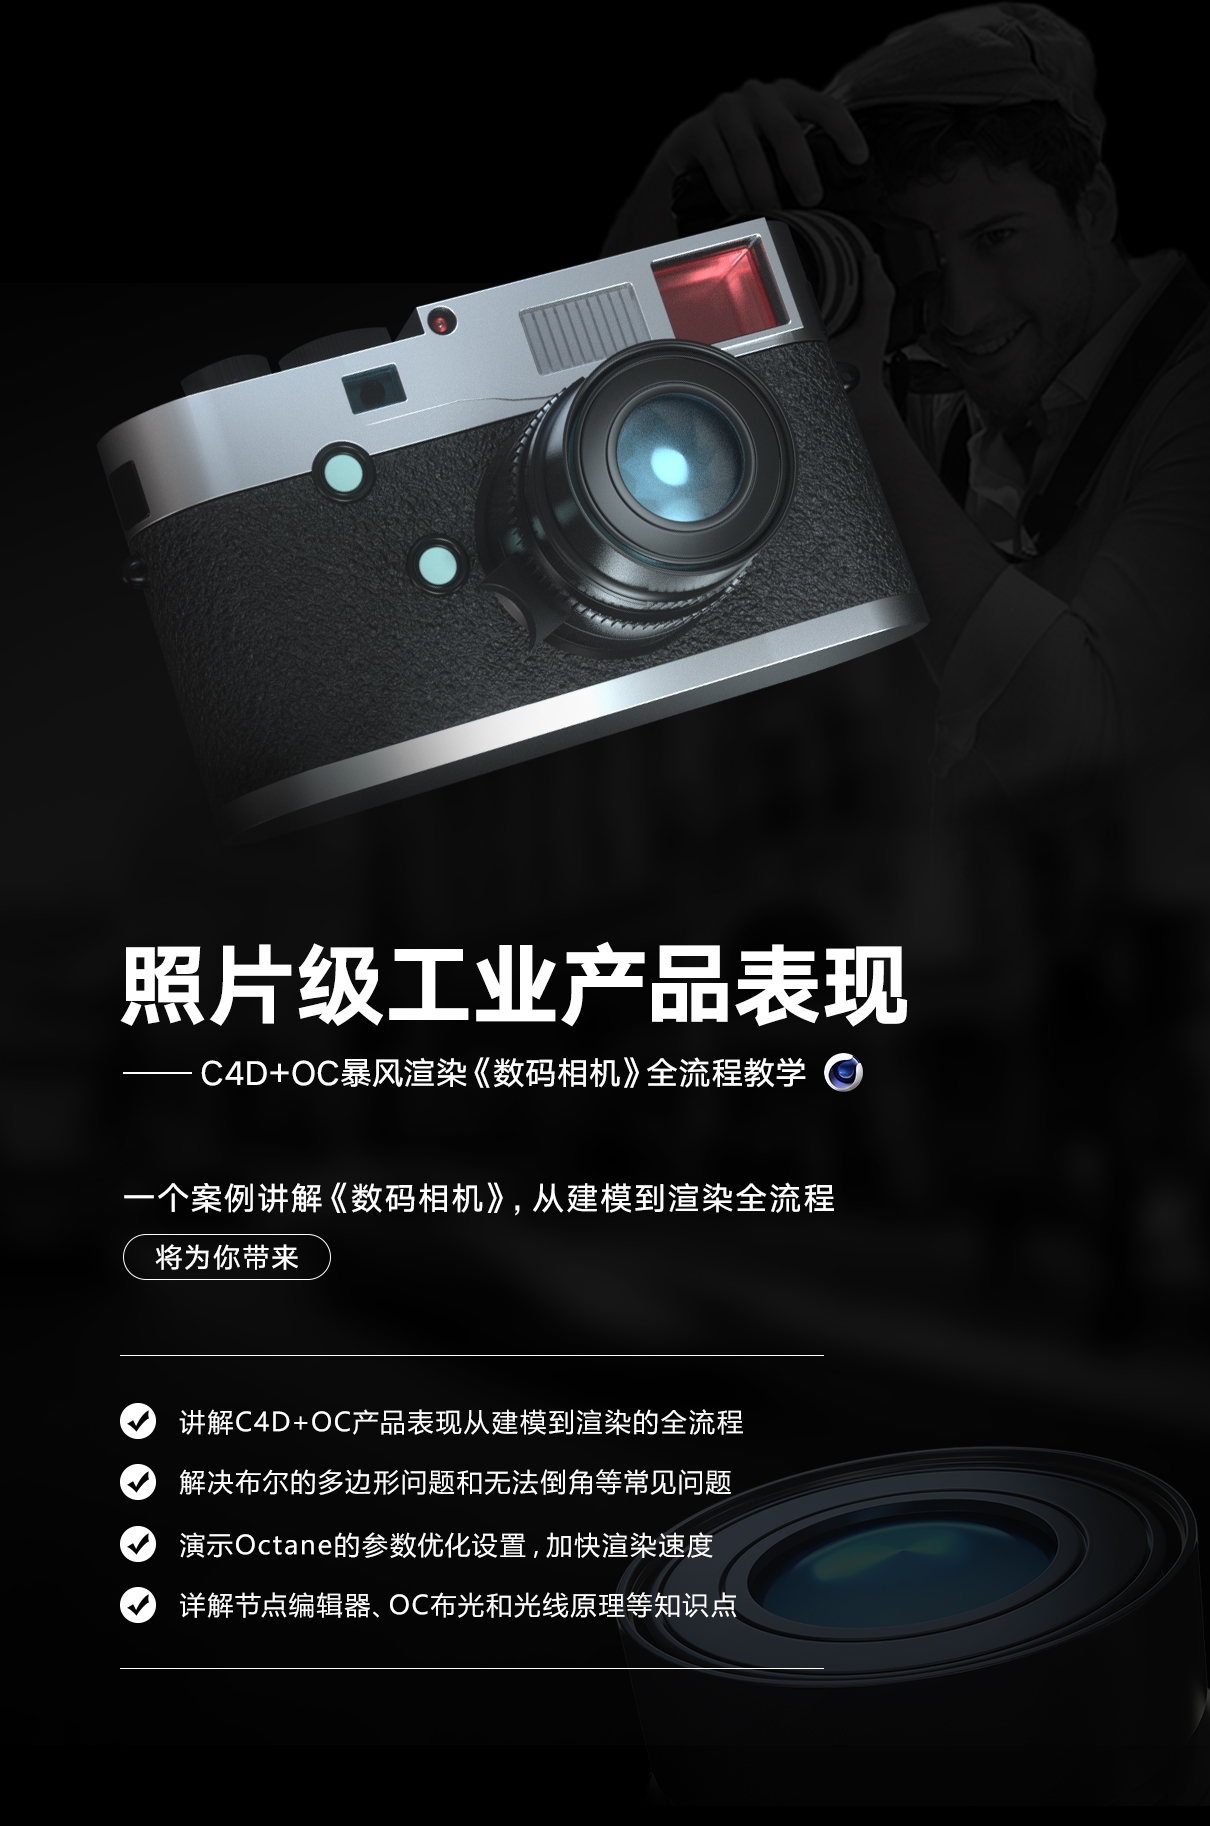 C4D数码相机产品设计